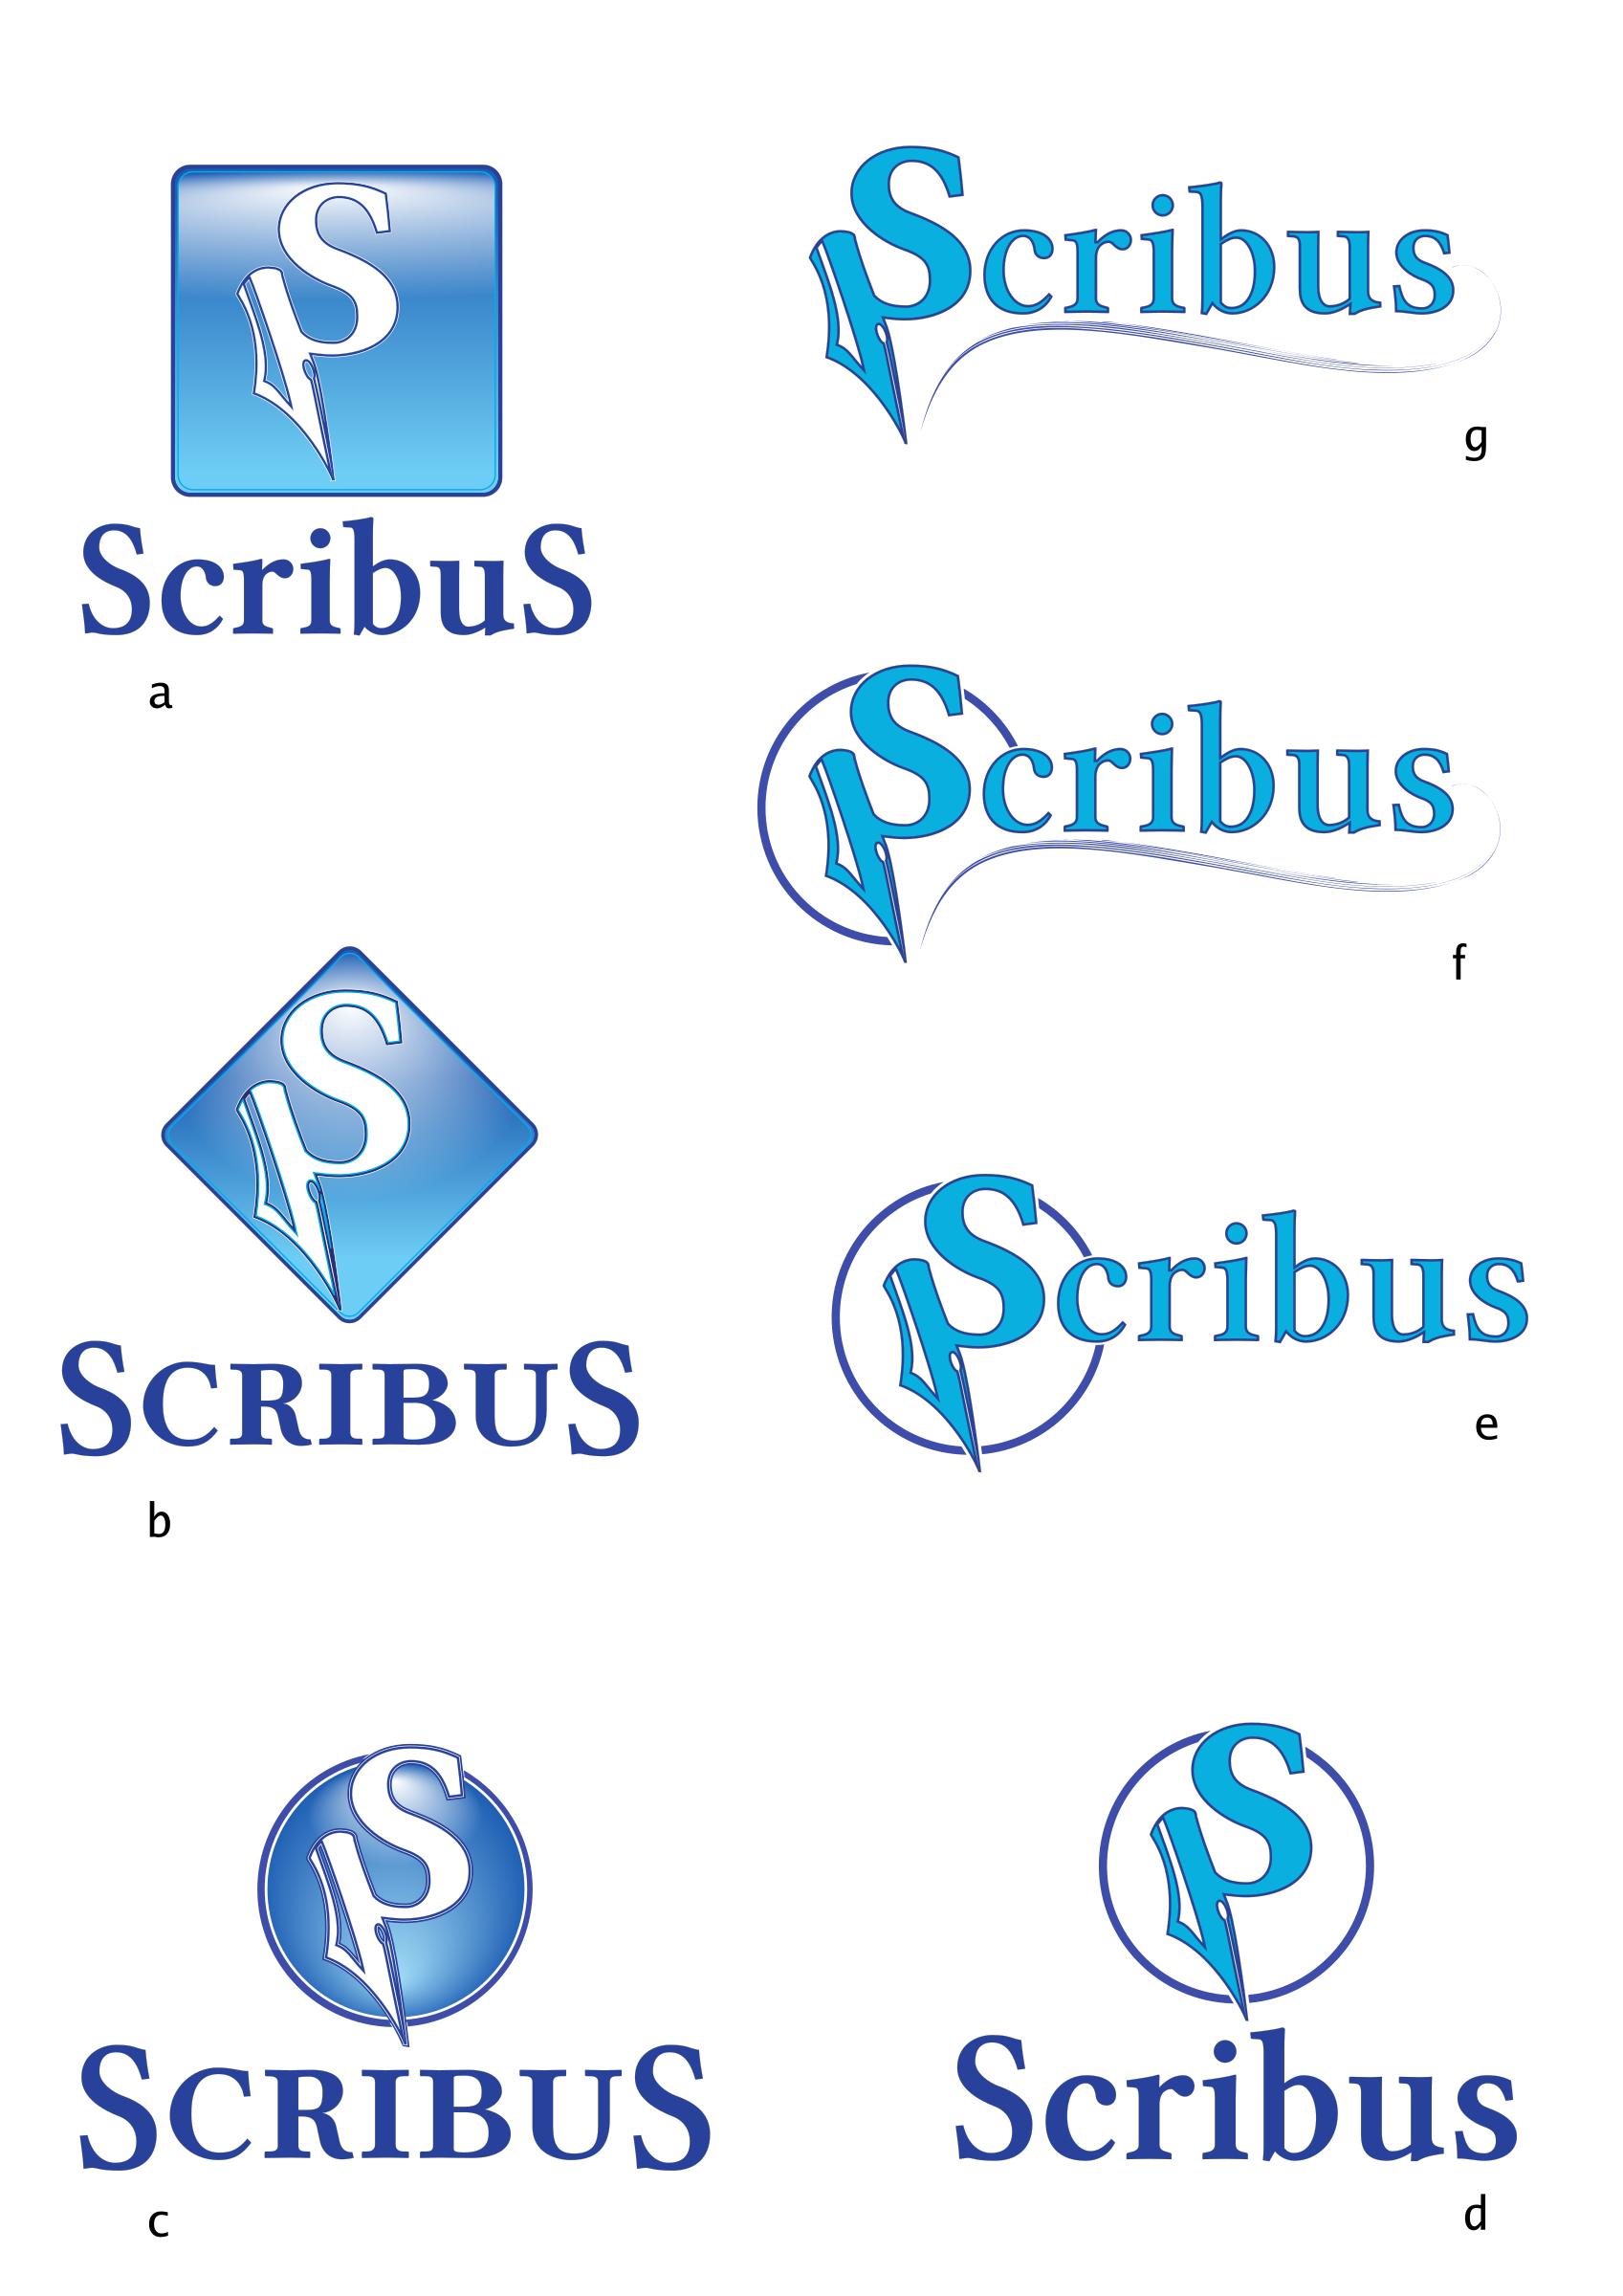 scribus-logos-propose-mockups png